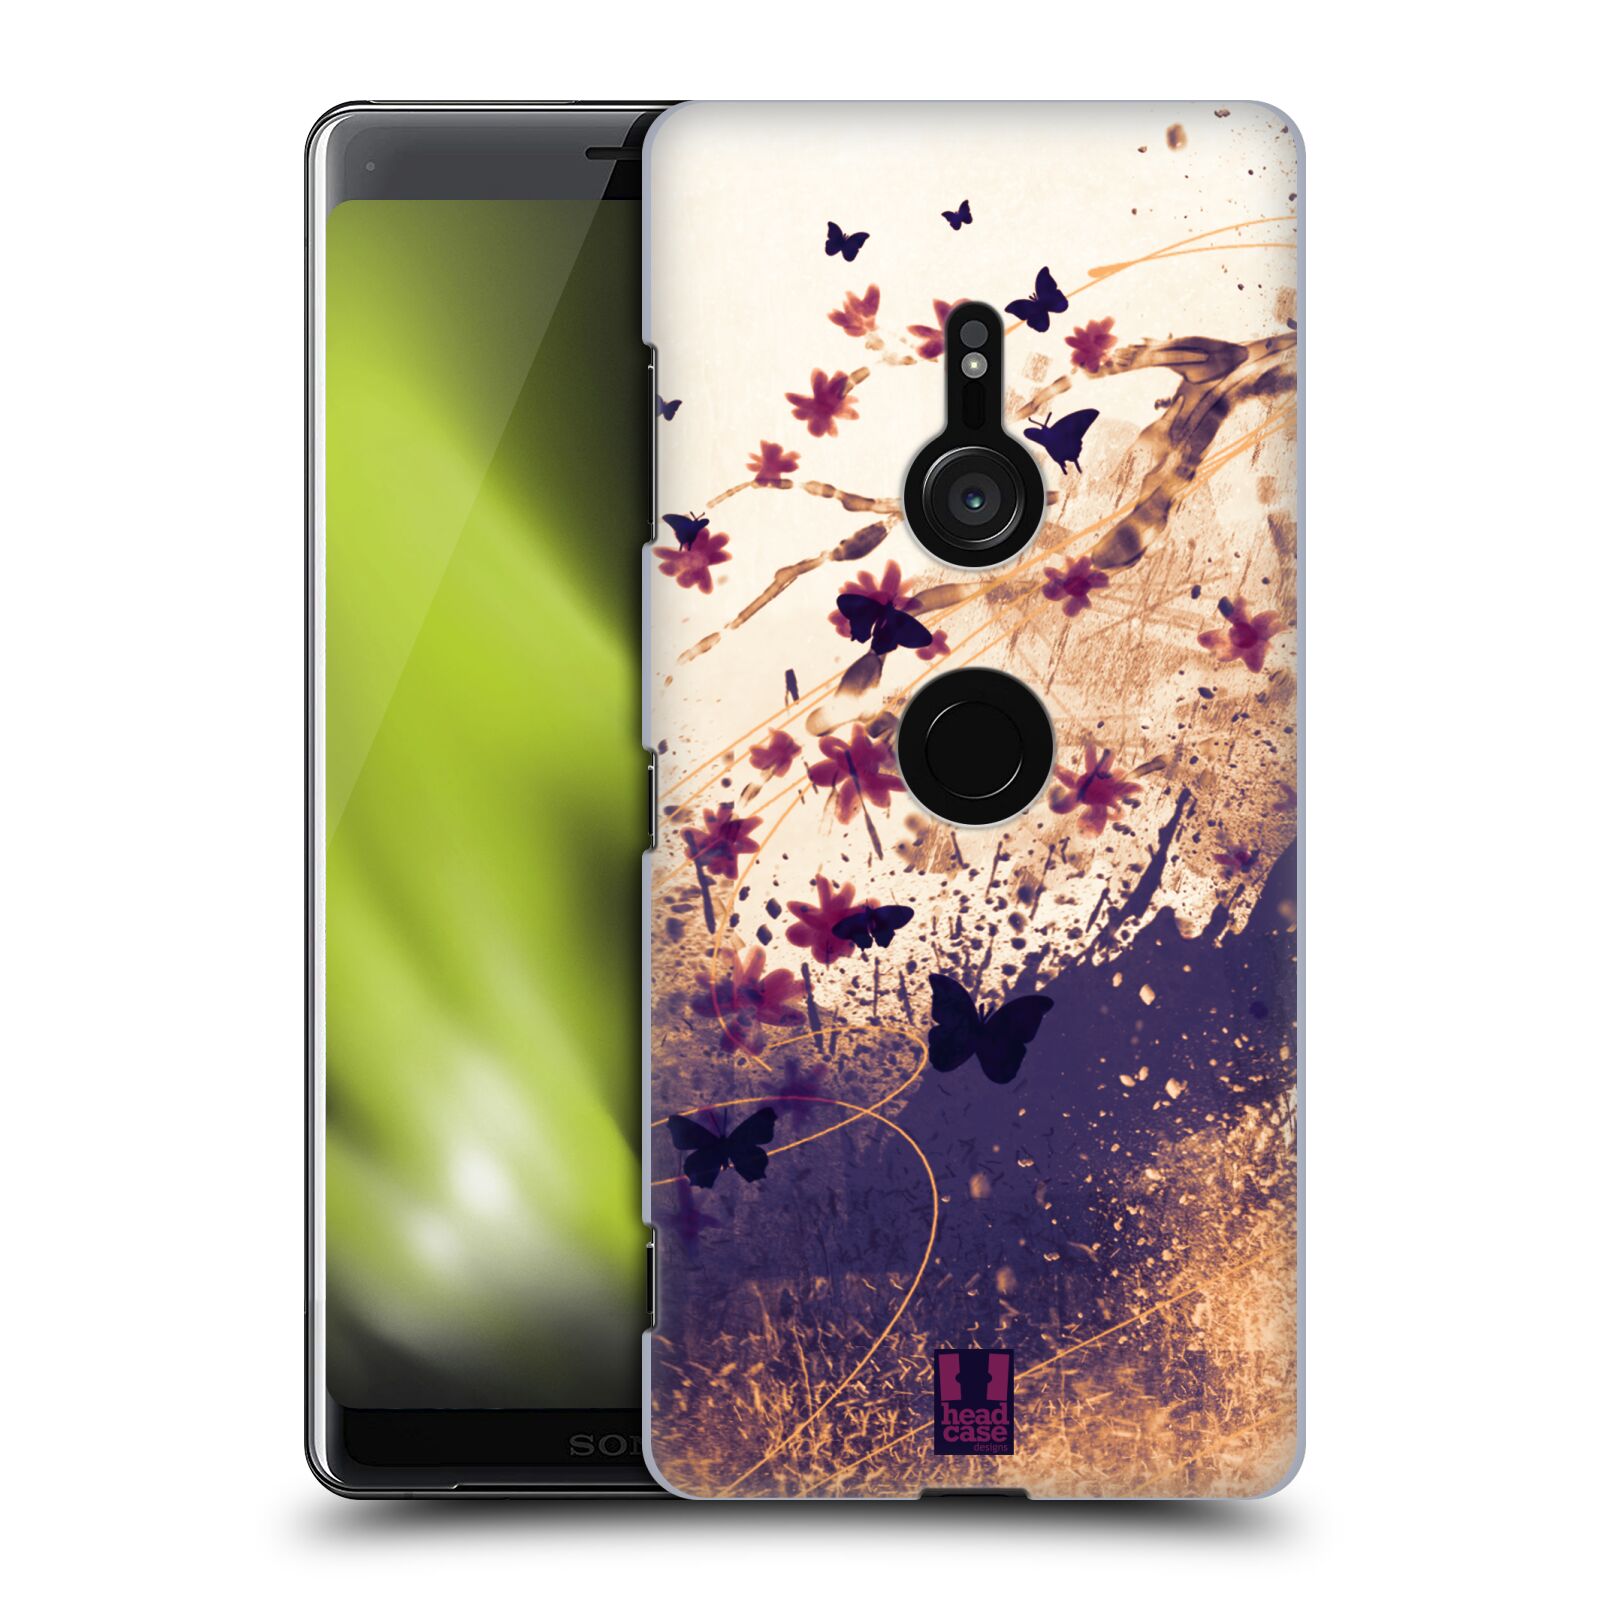 Zadní obal pro mobil Sony Xperia XZ3 - HEAD CASE - Barevné květy a motýlci